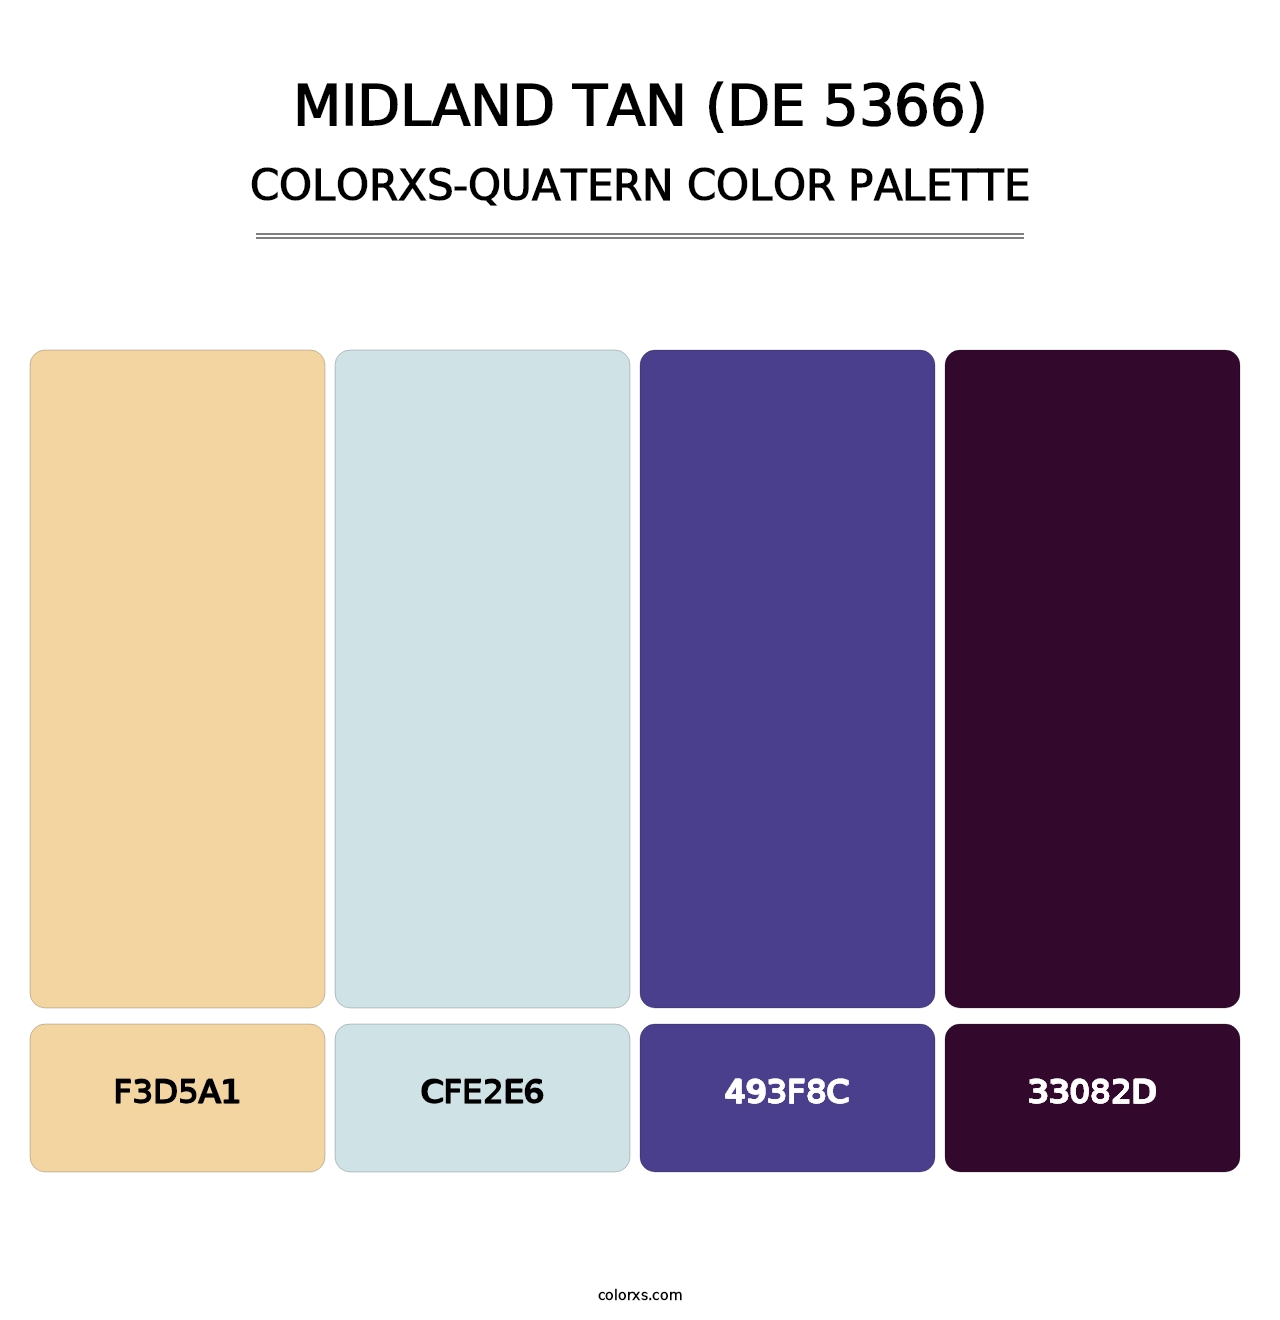 Midland Tan (DE 5366) - Colorxs Quatern Palette